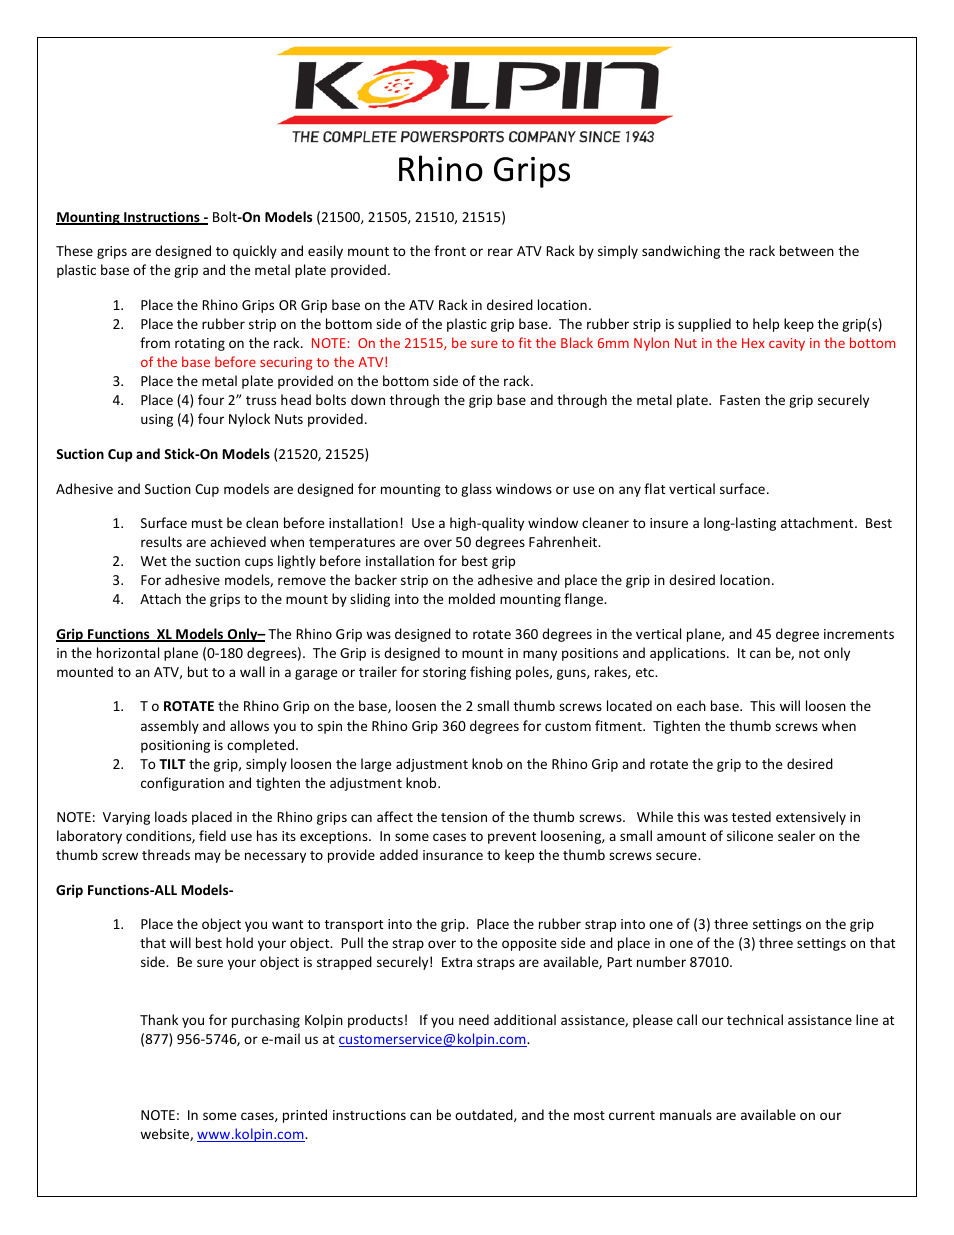 21515 – Rhino Grips